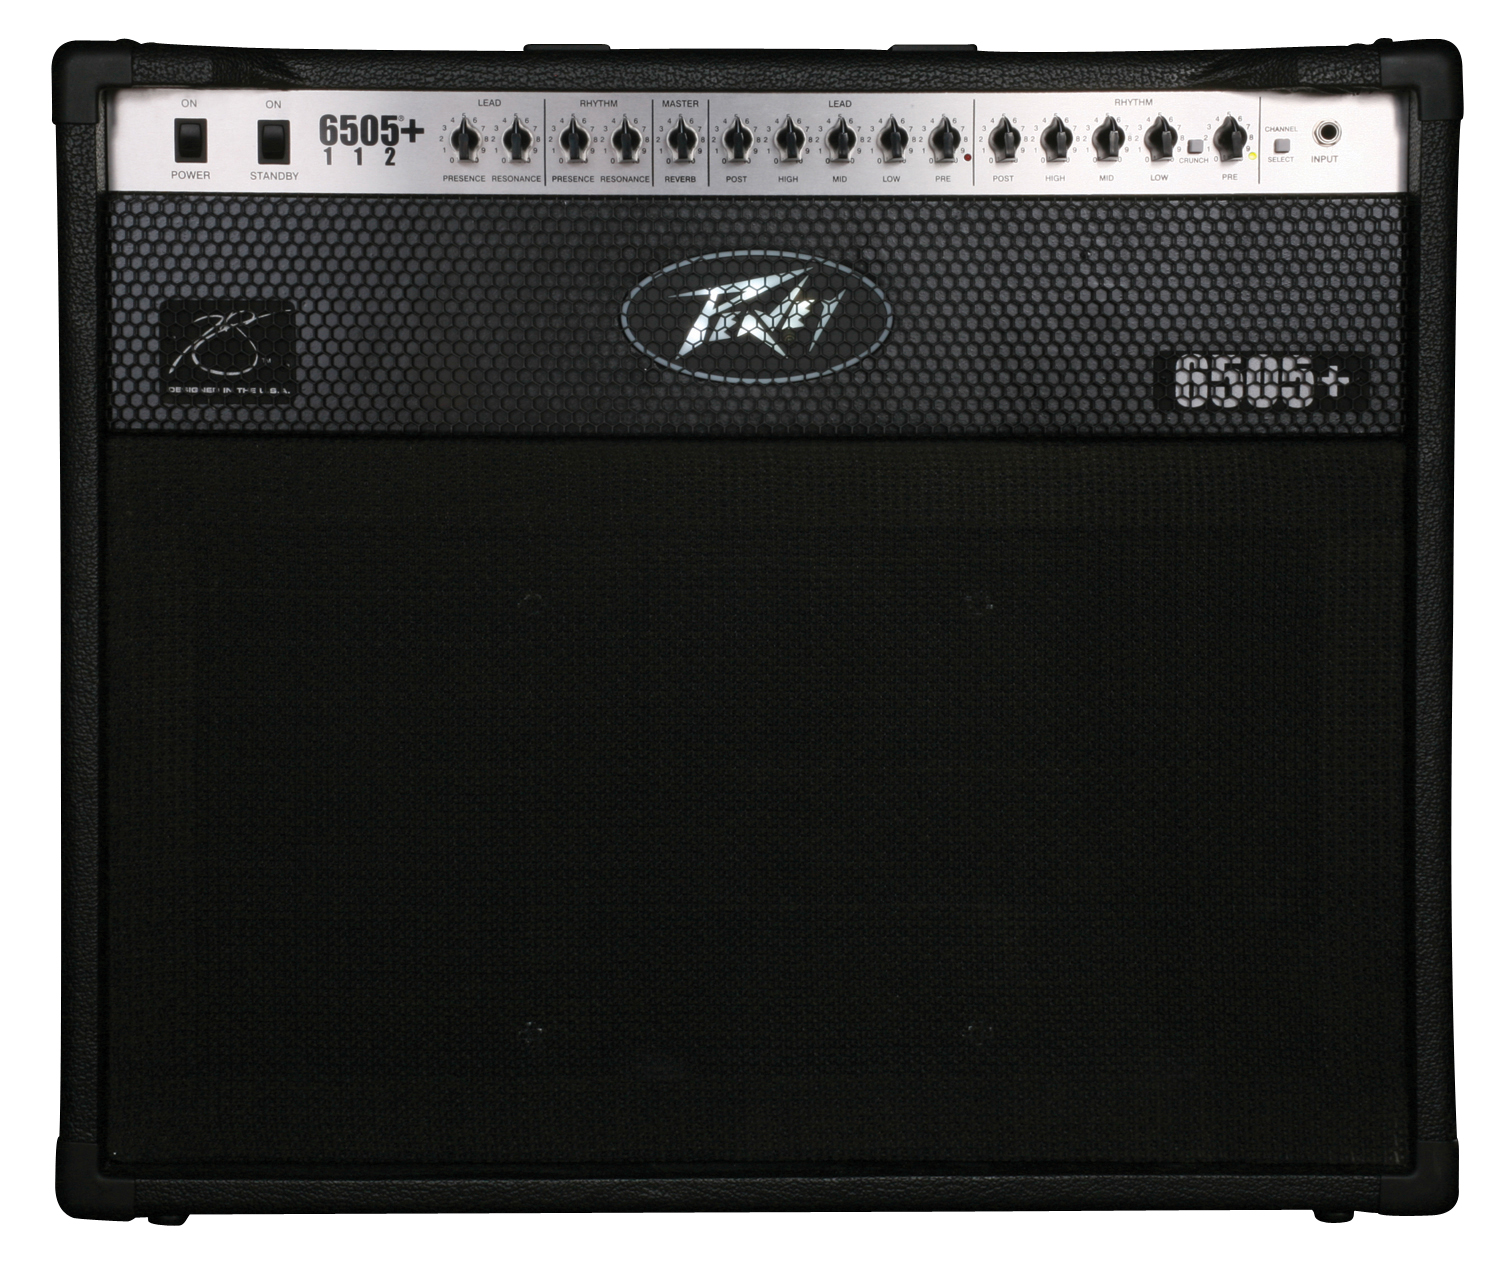 Peavey Peavey 6505 Plus 112 Guitar Amplifier, 60 Watts, 1x12 Inch